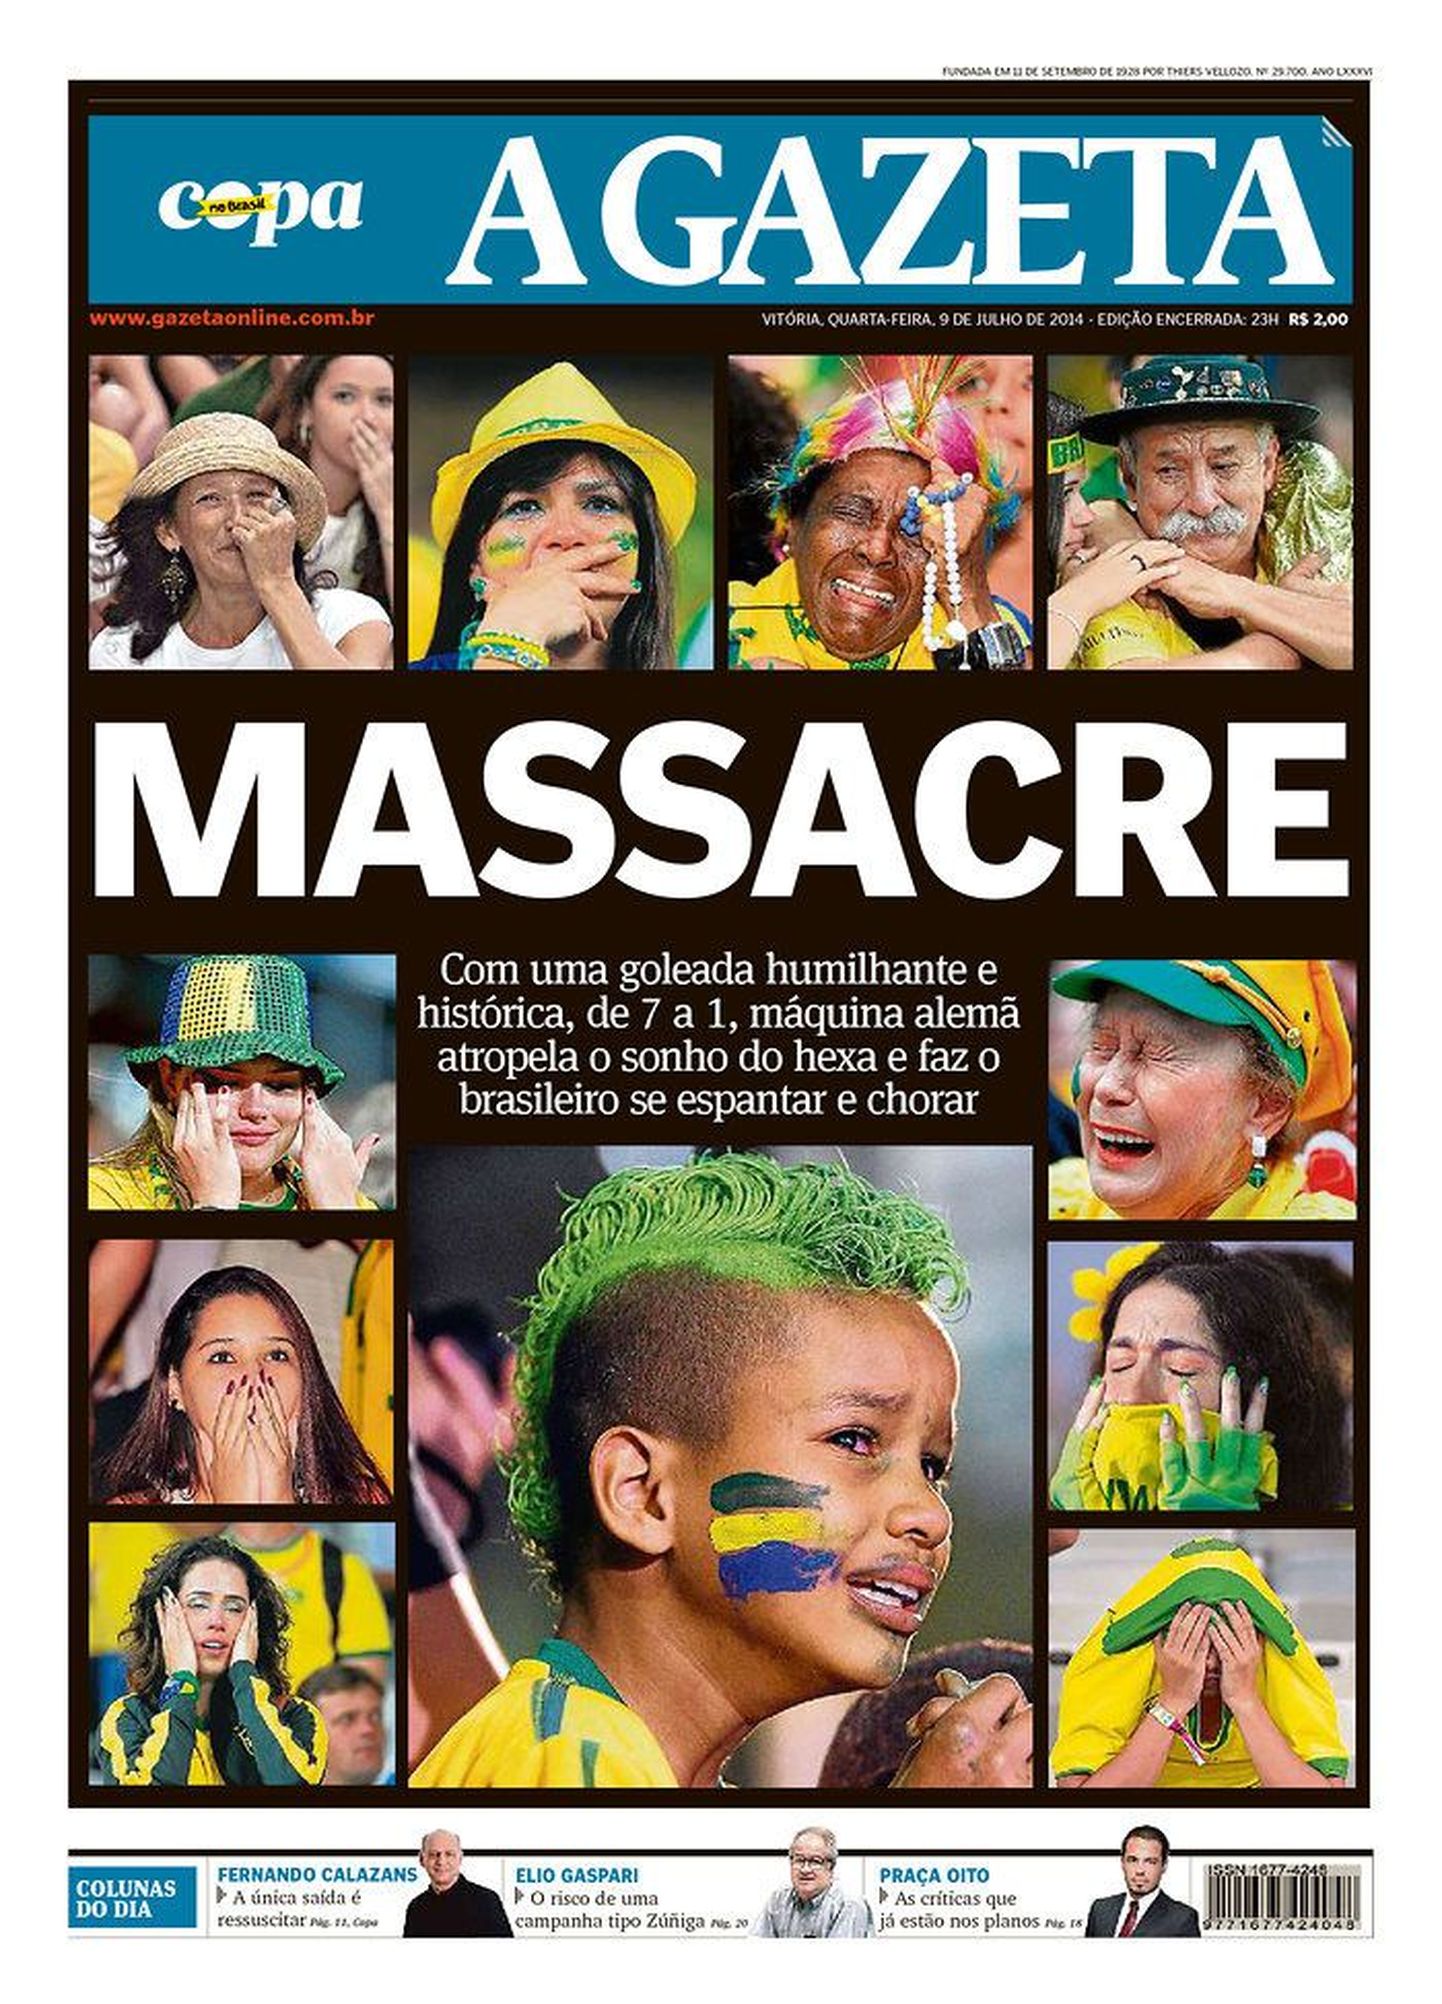 Brasiilia meedia oli pärast šokeerivat kaotust meeskonna esituses muidugi
ülimalt pettunud ja loomulikult olid vastavalt meeleolule pandud rõhk mustale  värvile. A Gazeta eksponeeris pisarais fänne ning lisas juurde suure ja rasvase pealkirja «Veresaun».